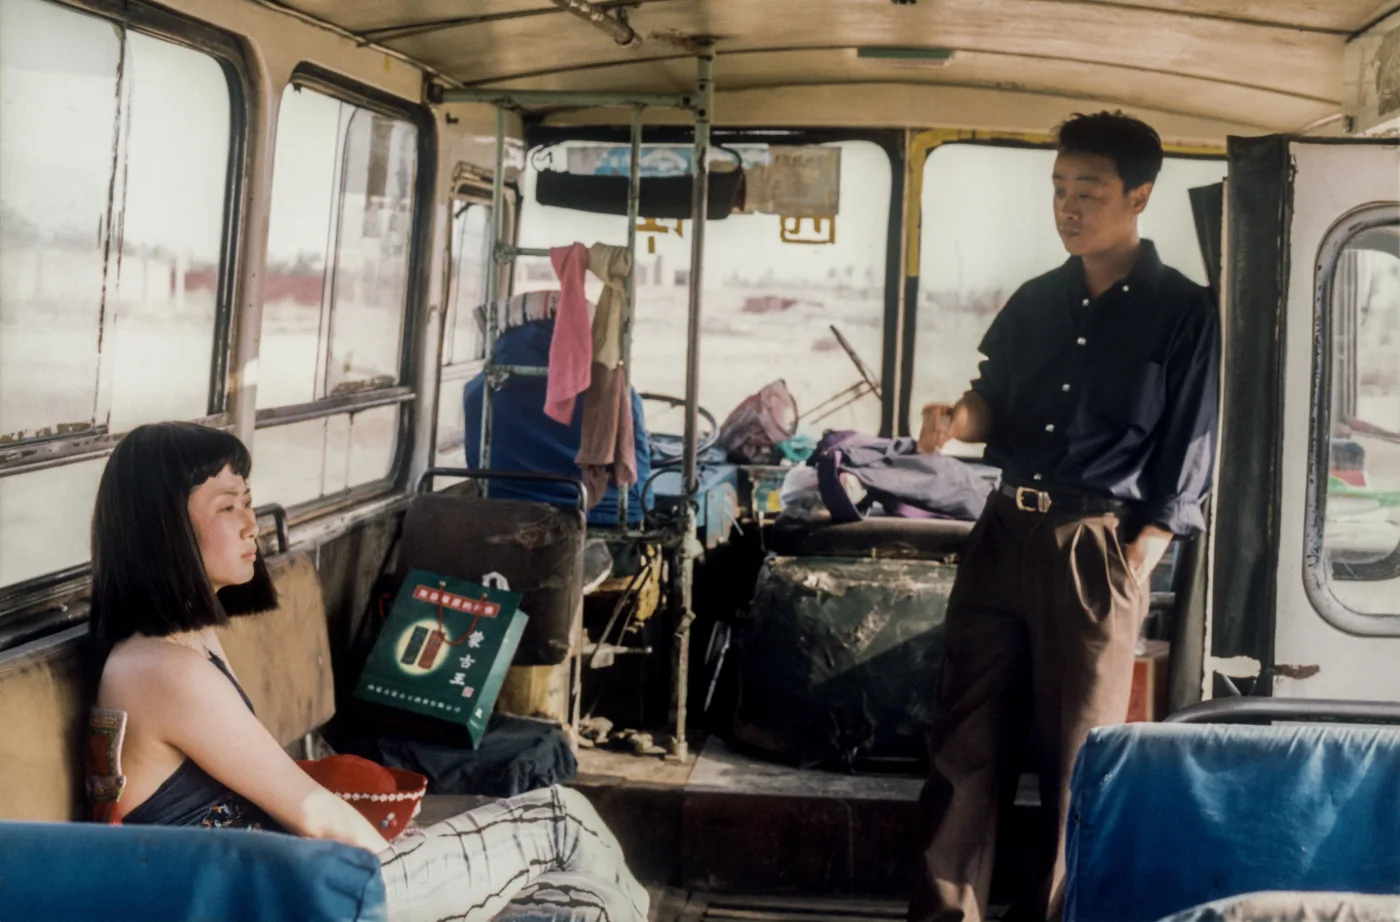 Innenaufnahme eines ausrangierten Busses, links sitzt eine Frau auf einer Bank, rechts steht ein Mann an der Tür, im Hintergrund verteilt sich Kleidung